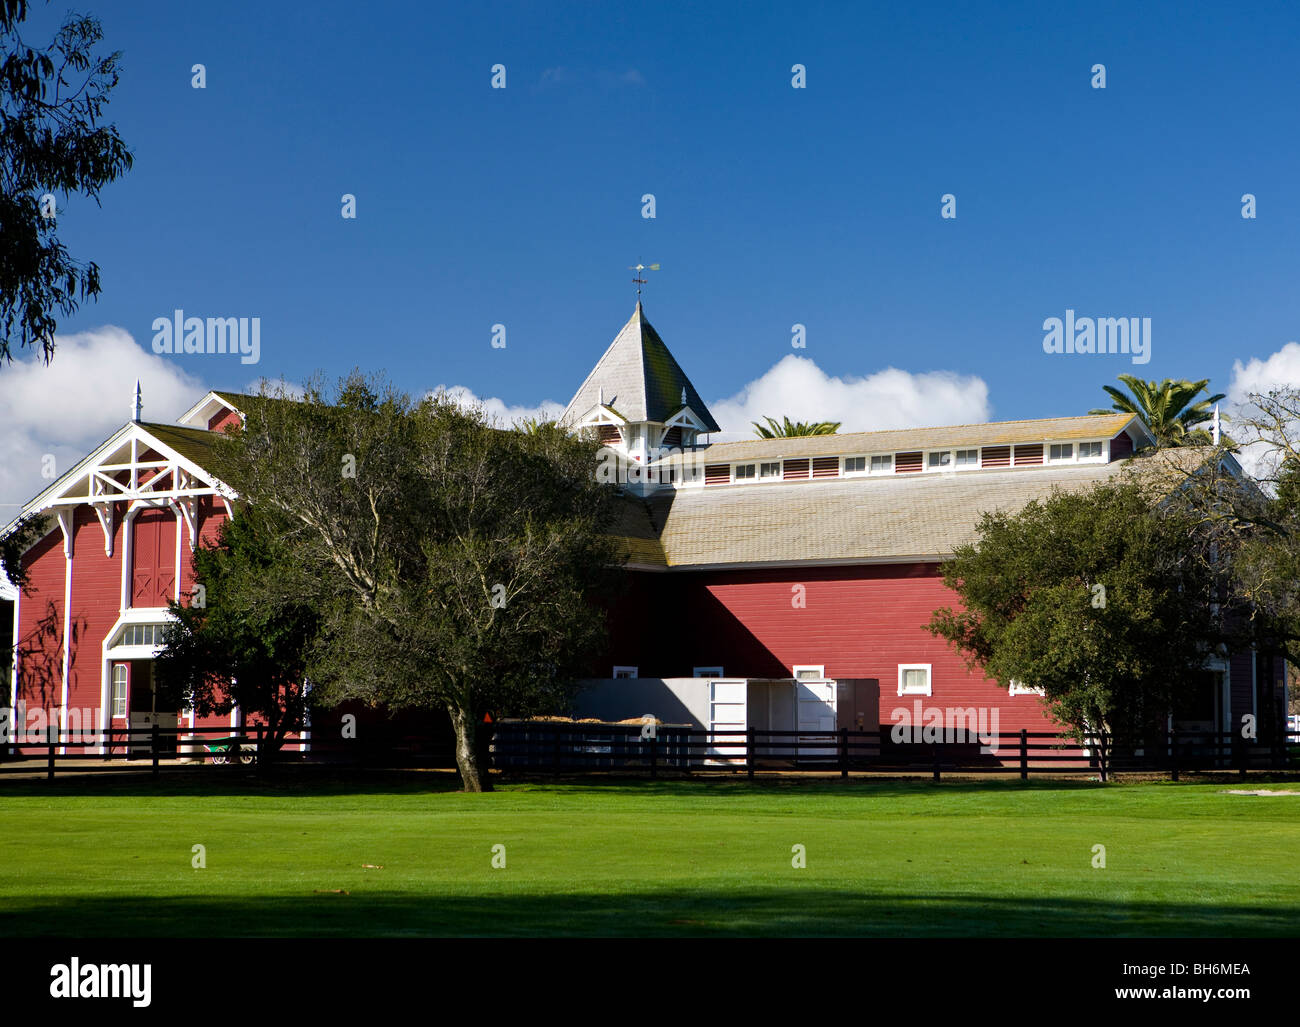 Die rote Scheune, Stanford University, Stanford Kalifornien, Vereinigte Staaten von Amerika. Stockfoto